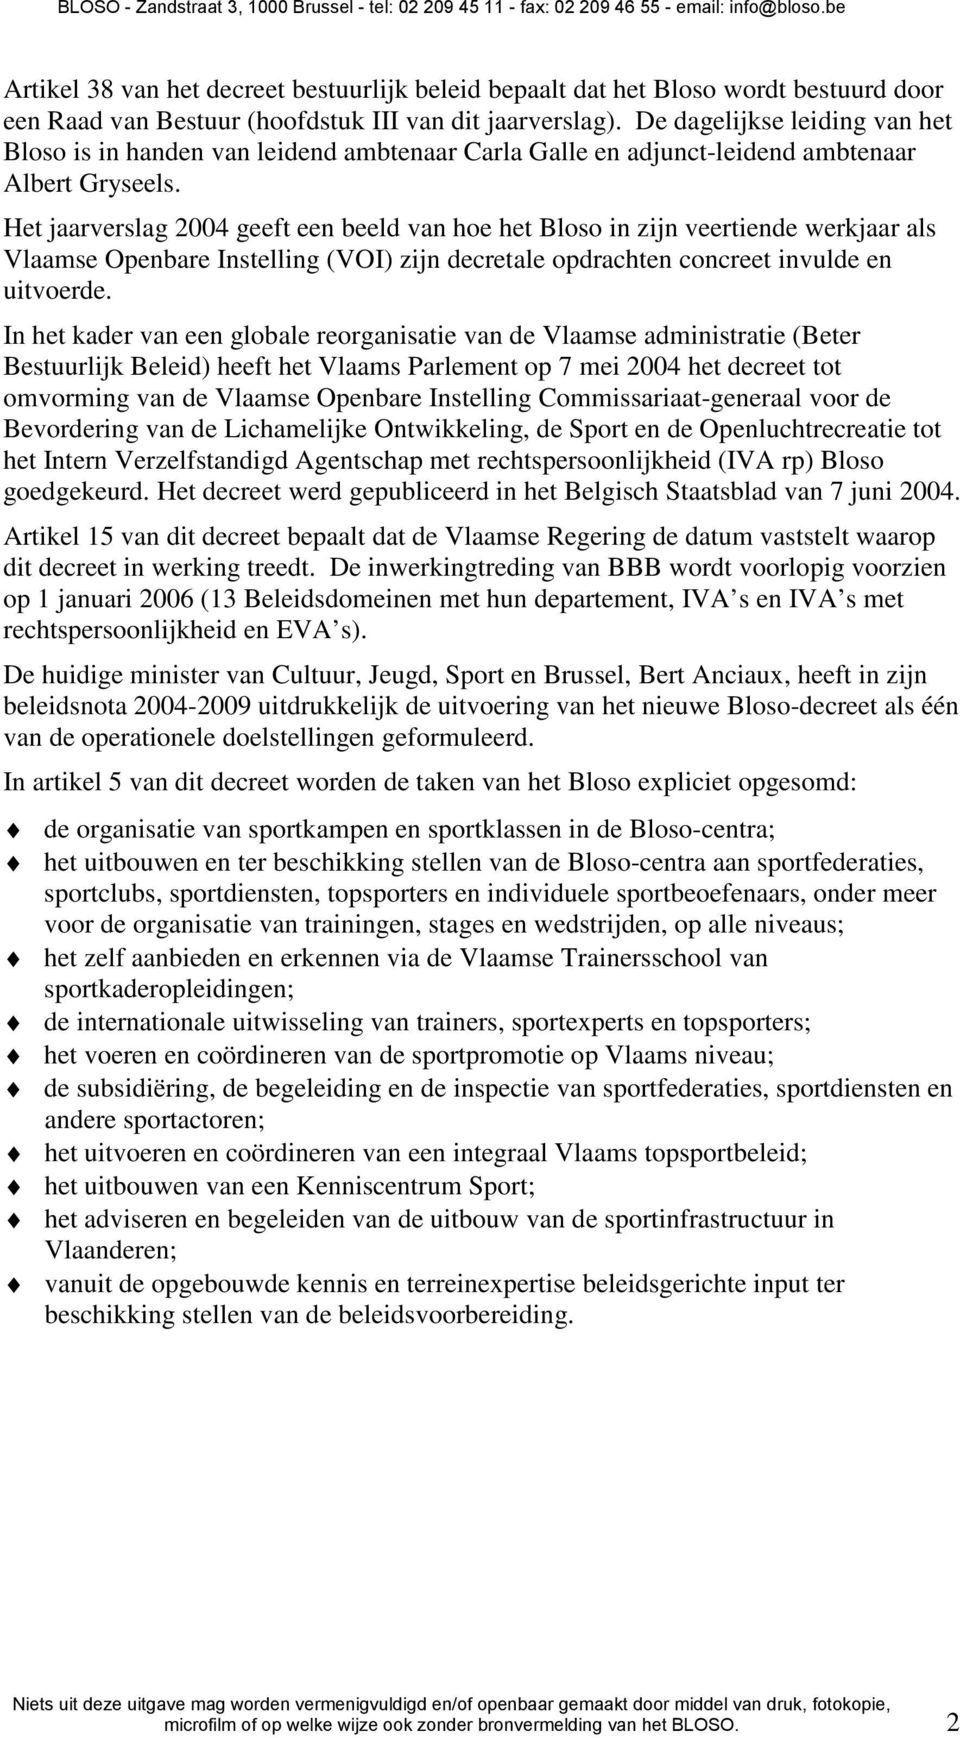 Het jaarverslag 2004 geeft een beeld van hoe het Bloso in zijn veertiende werkjaar als Vlaamse Openbare Instelling (VOI) zijn decretale opdrachten concreet invulde en uitvoerde.